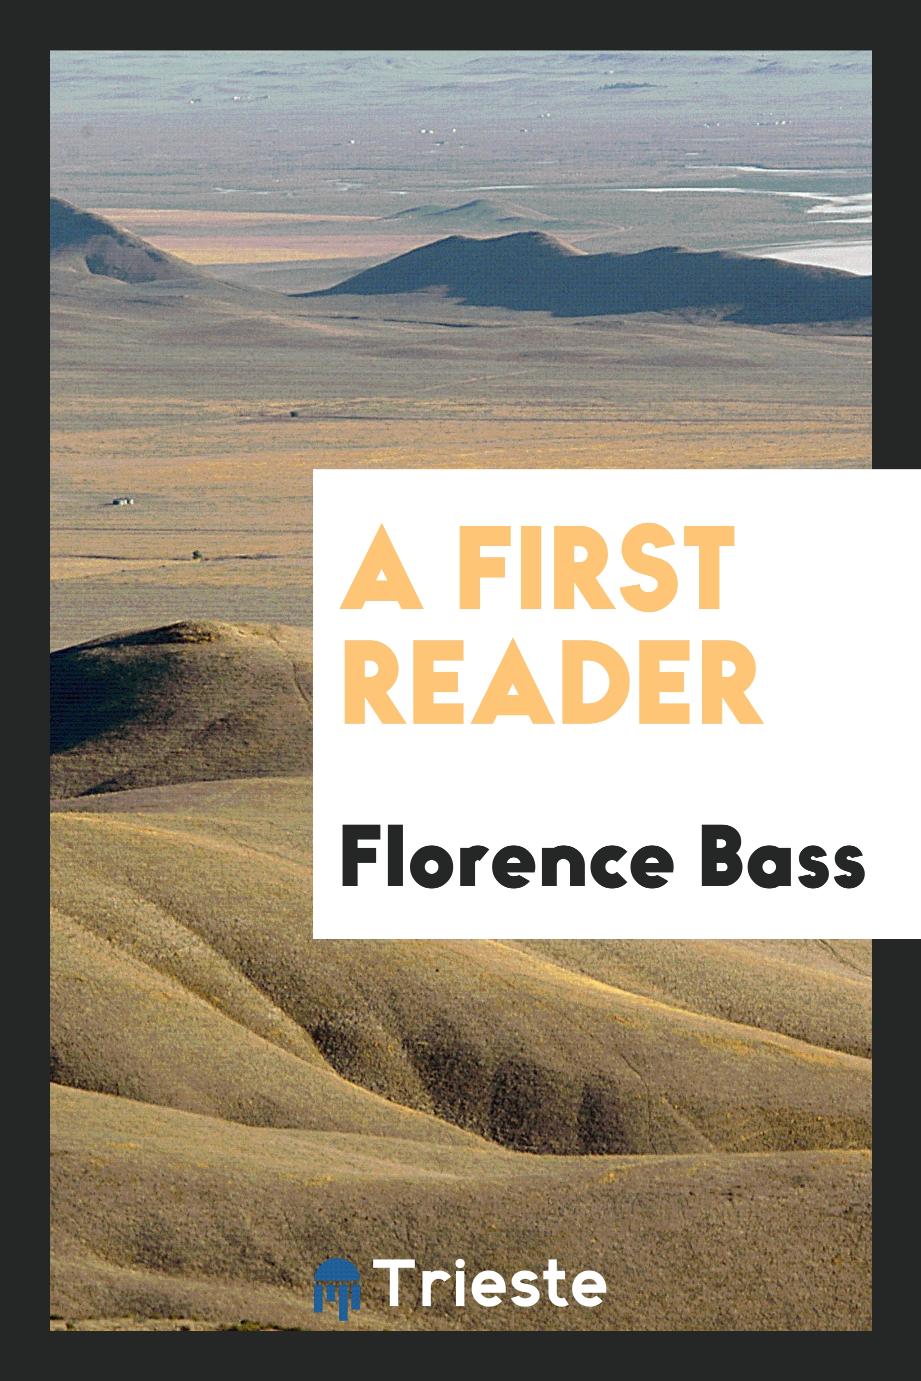 A First Reader